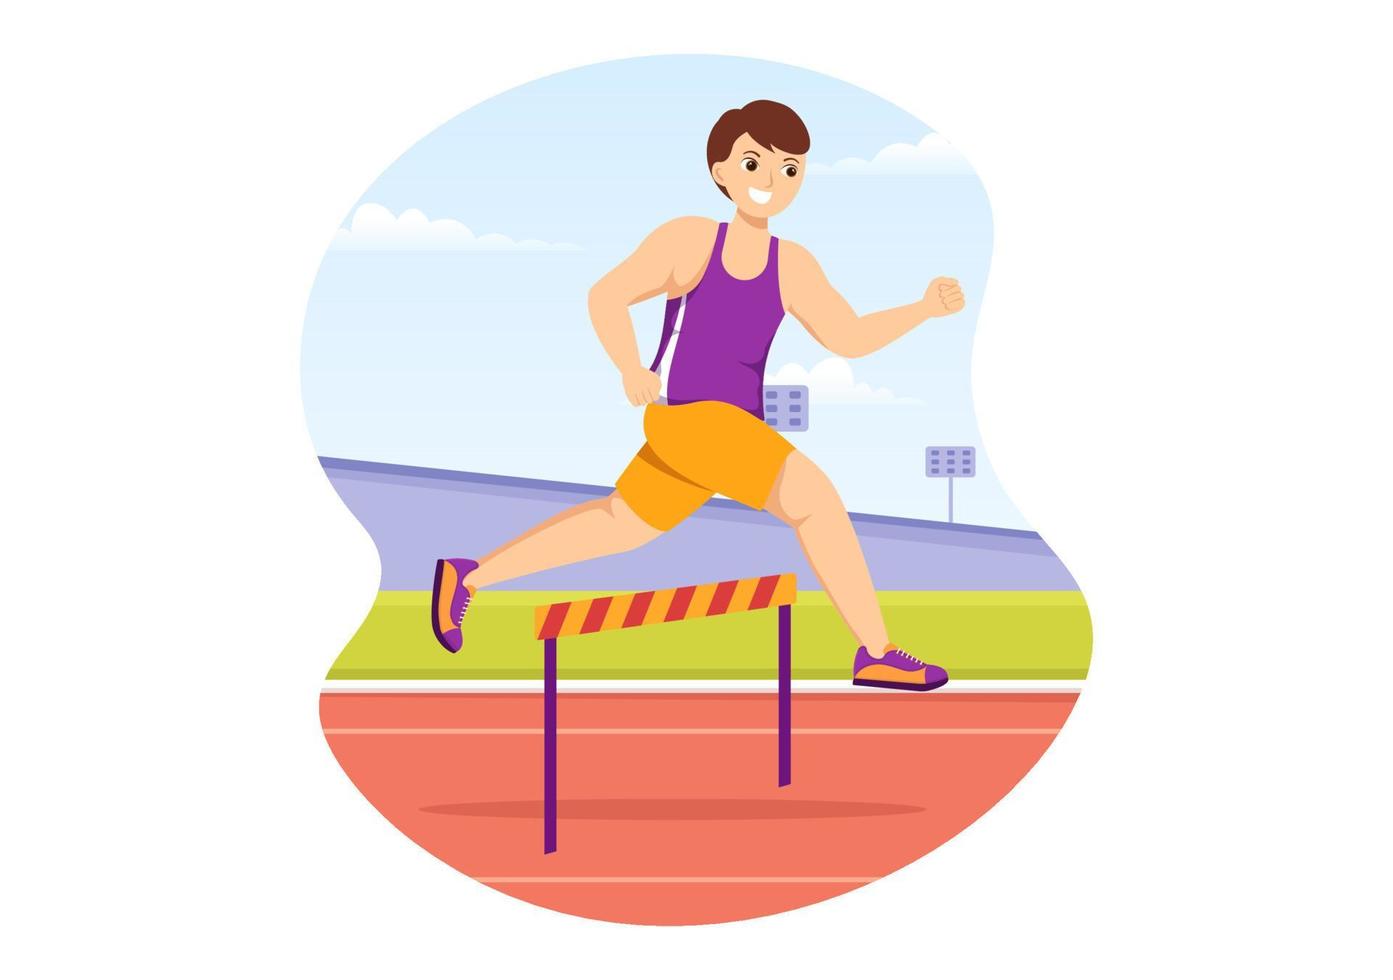 ilustração de jogo de esportista de salto em distância de obstáculo de atleta em execução de obstáculo para banner da web ou página de destino em modelos desenhados à mão de desenhos animados planos vetor